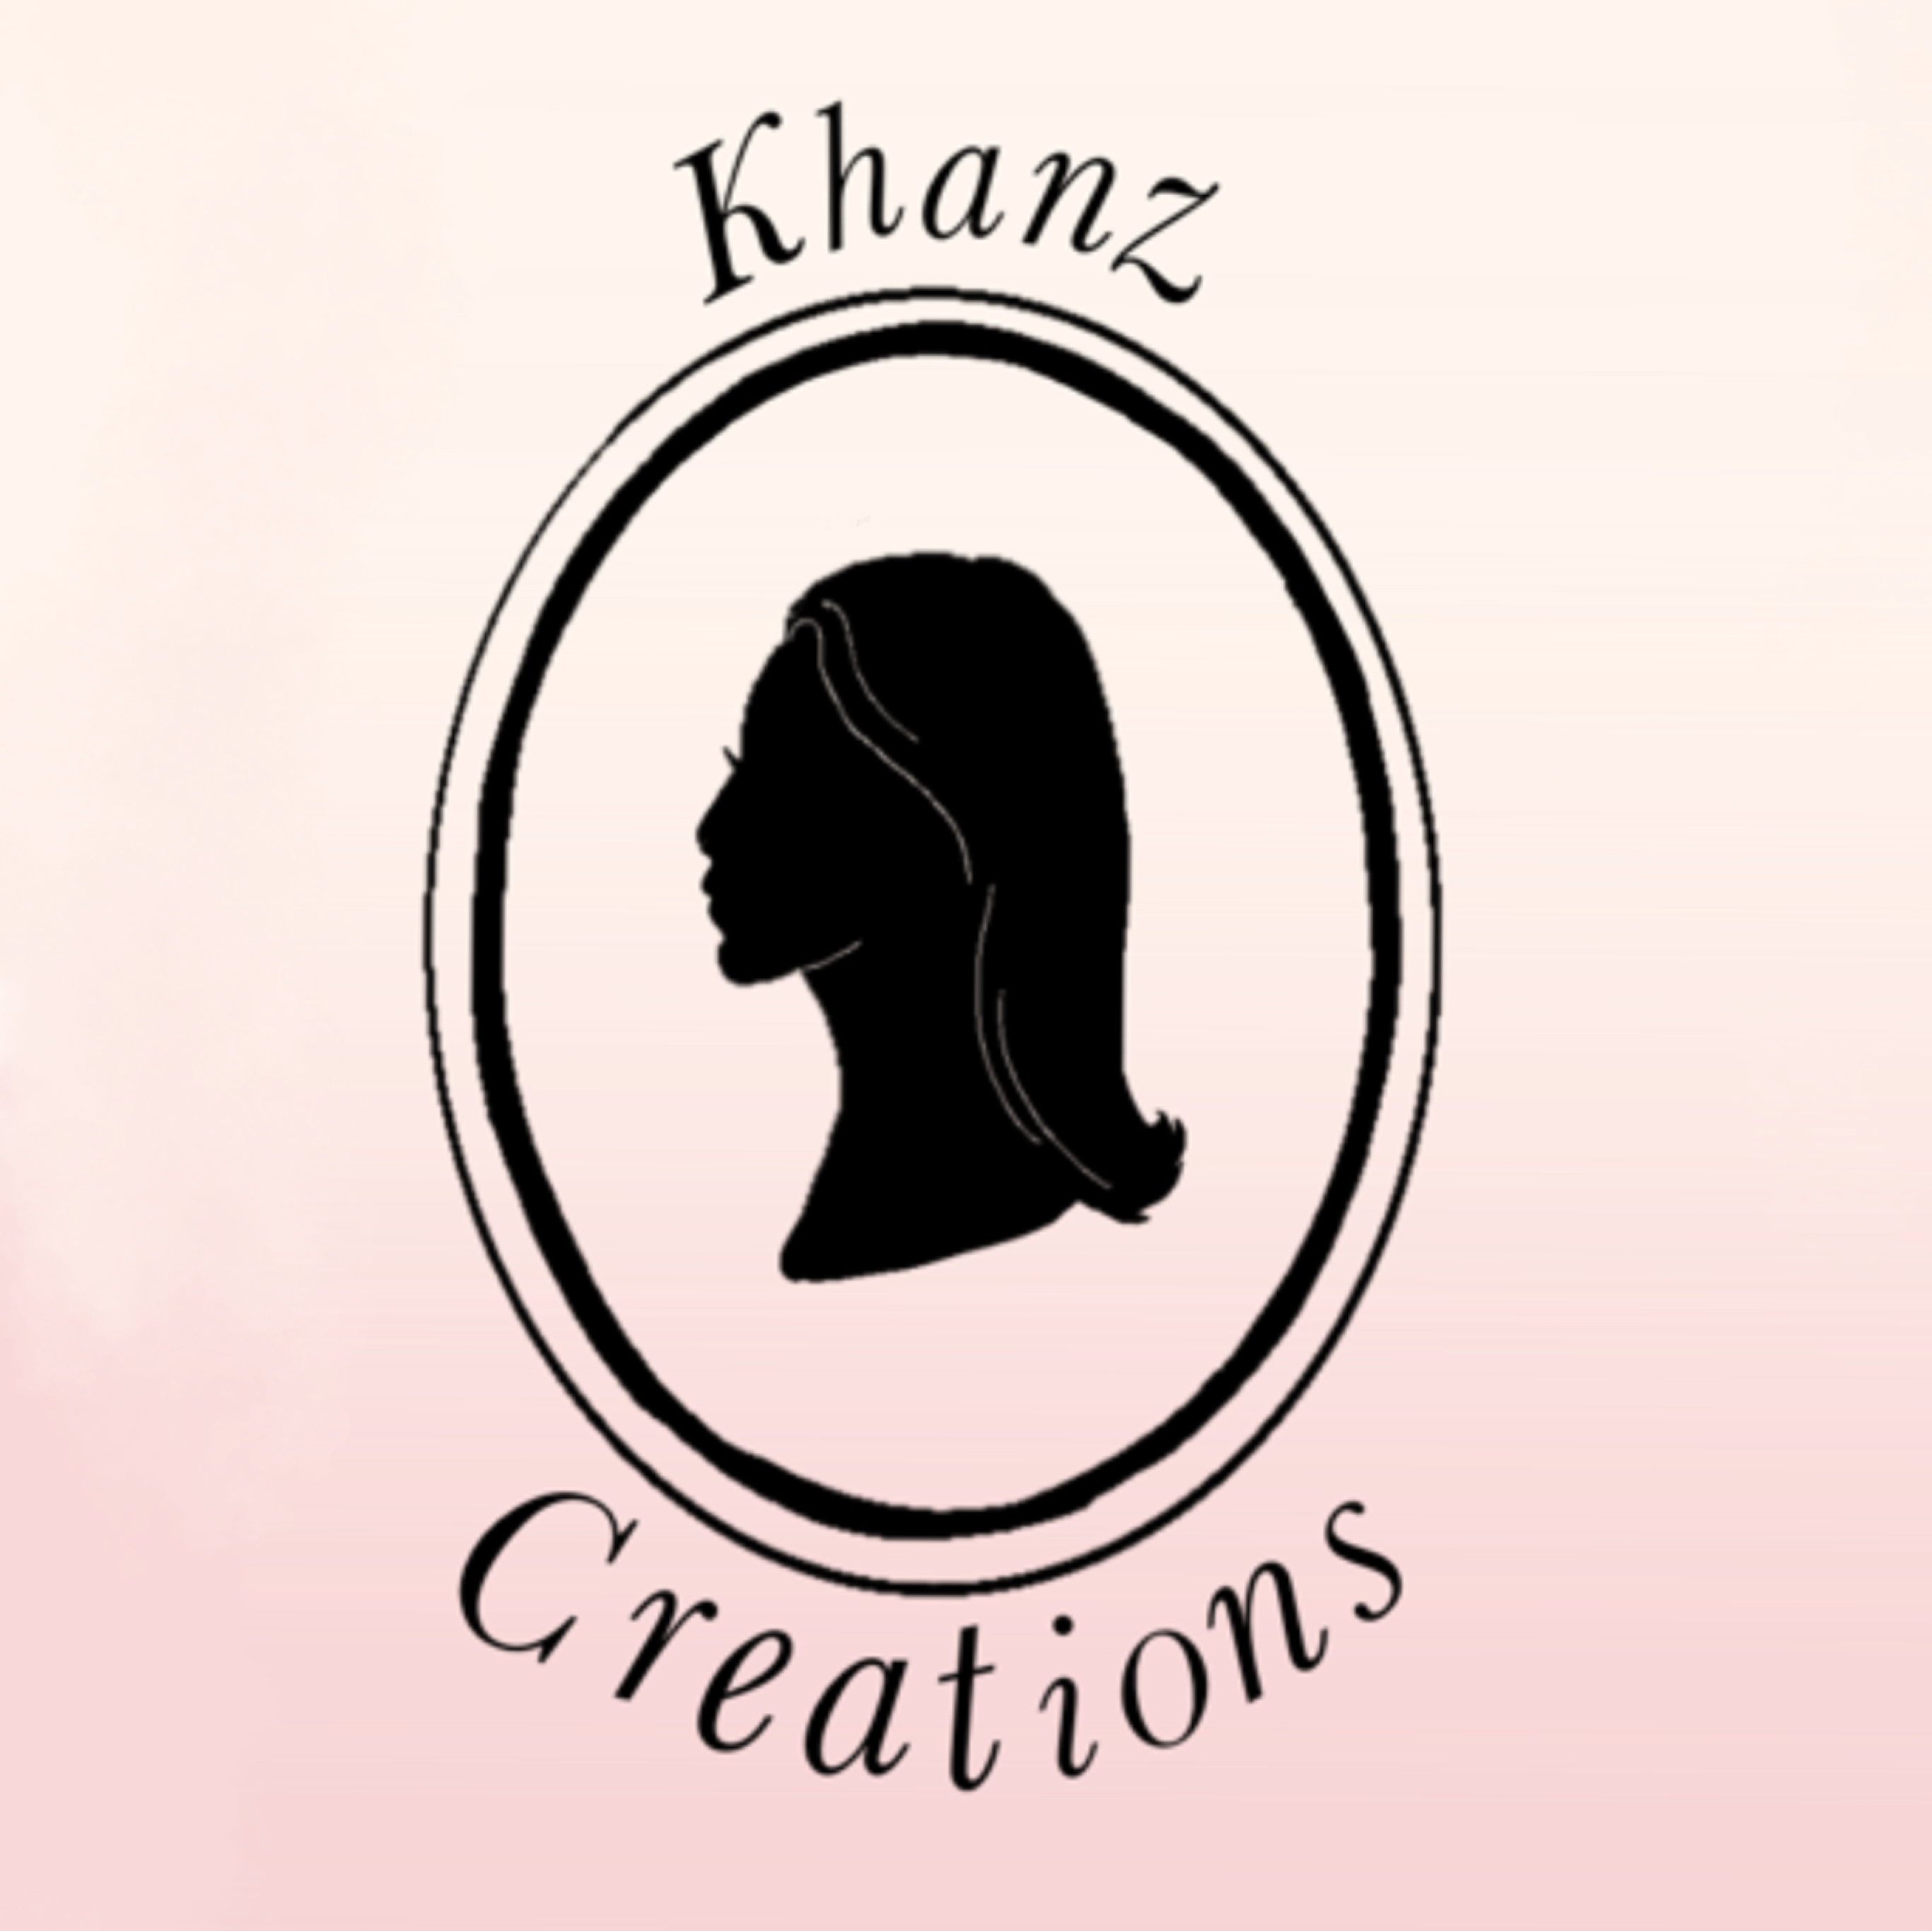 Khanzcreations